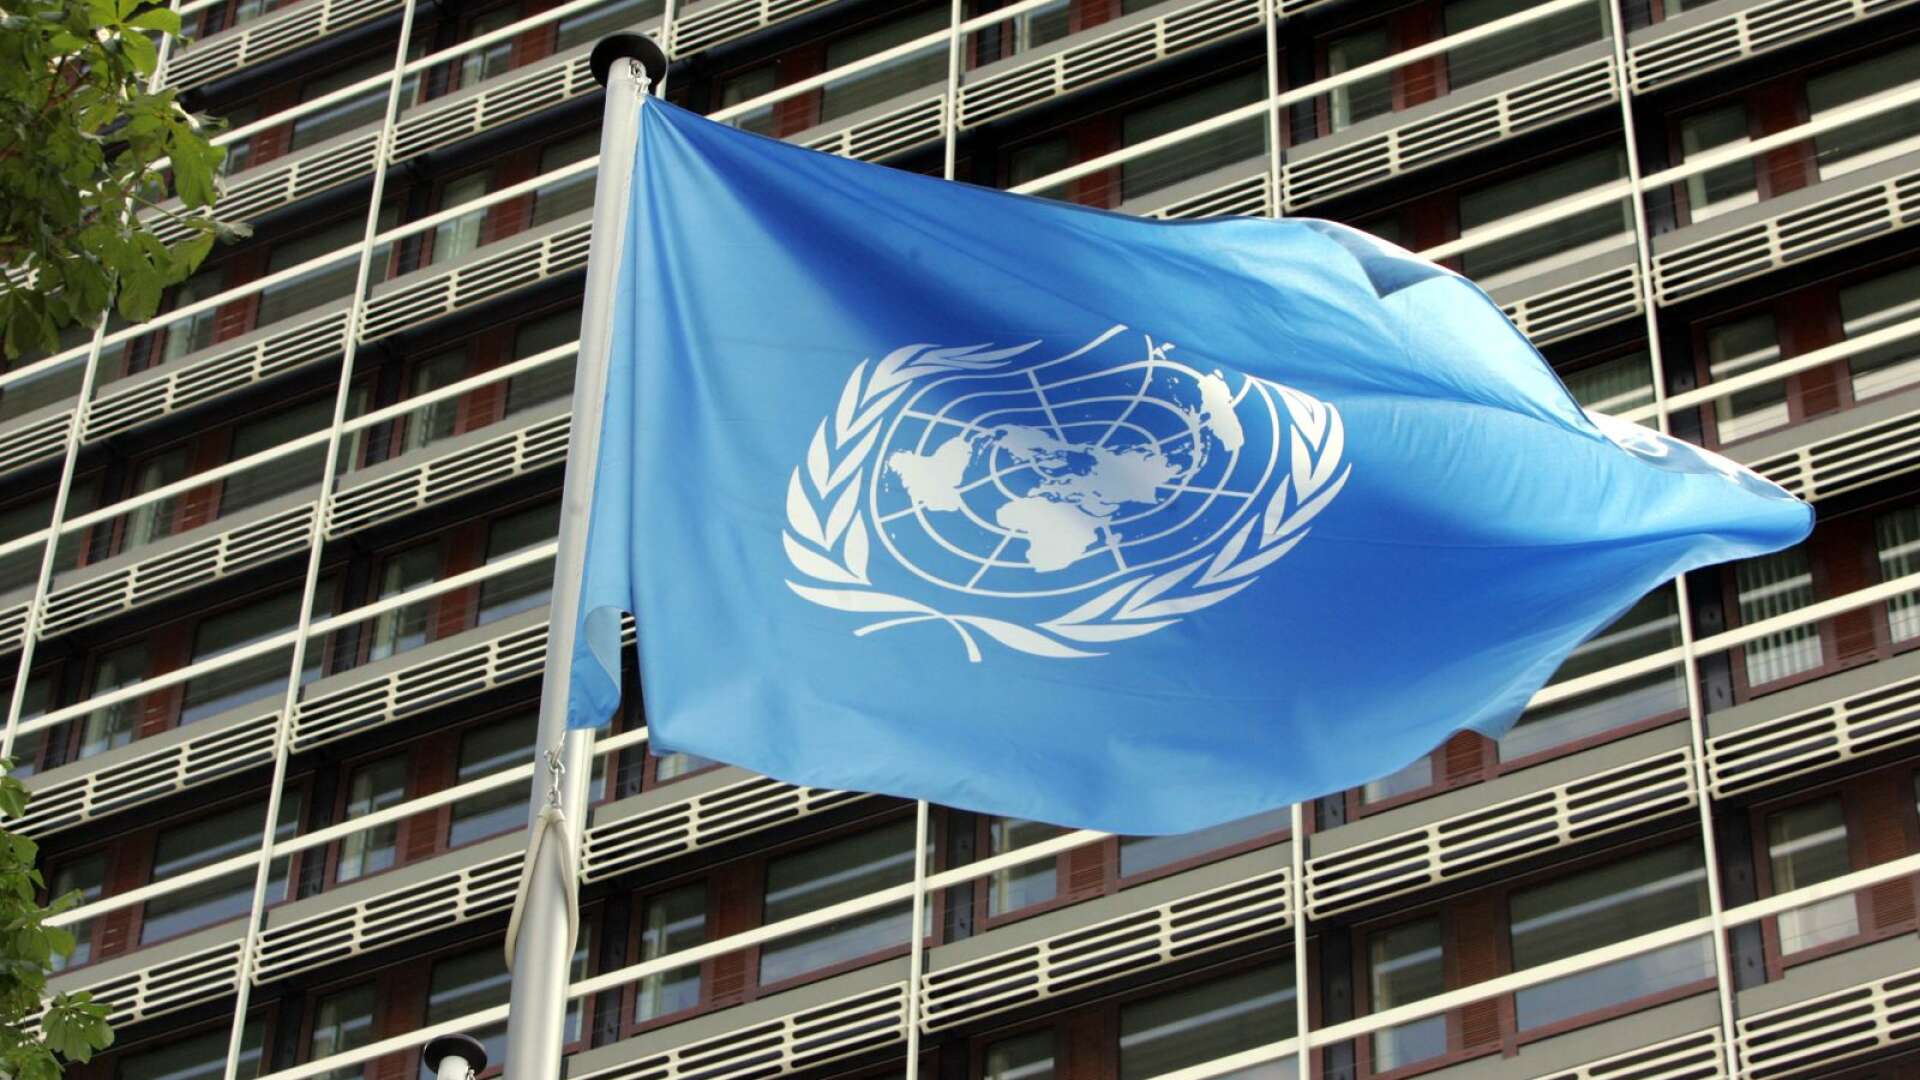 Precis som många andra tycker jag att FN och dess organ är långt ifrån perfekta. Samtidigt är det FN som i nästan åtta decennier bidragit till färre krig och medverkat till mer samarbete, skriver Evin Incir.